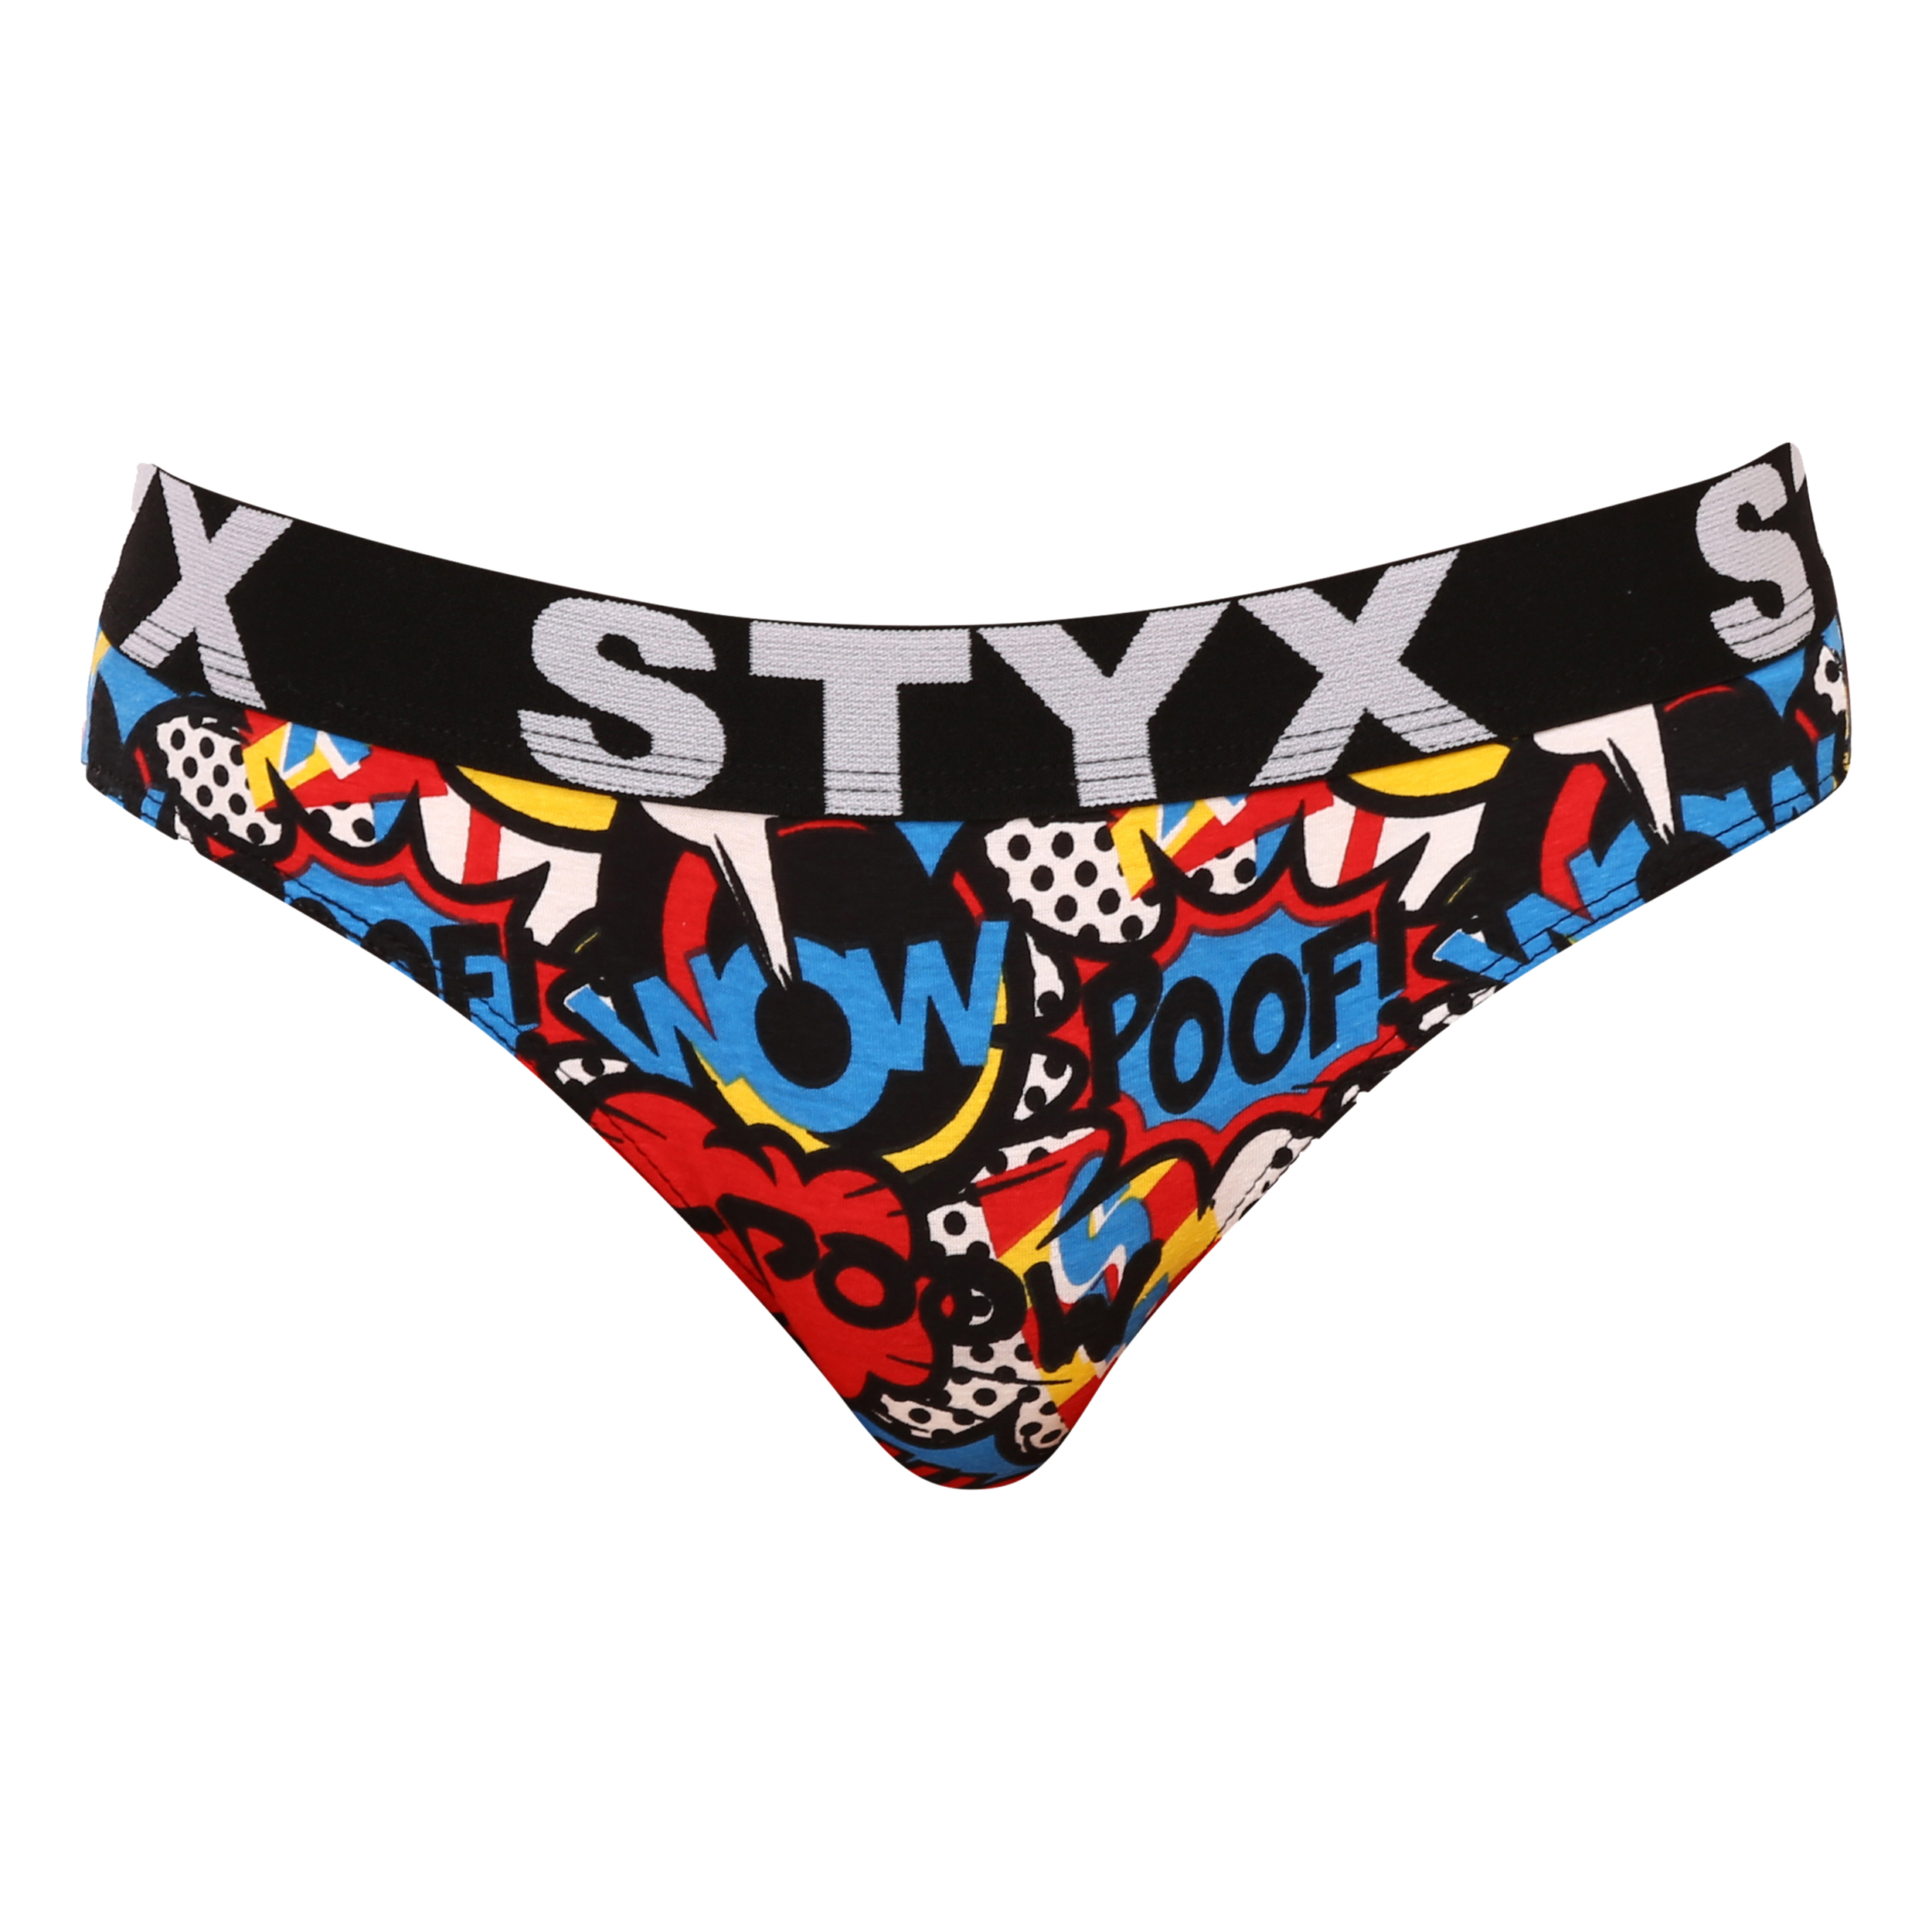 E-shop Dámské kalhotky Styx art sportovní guma poof